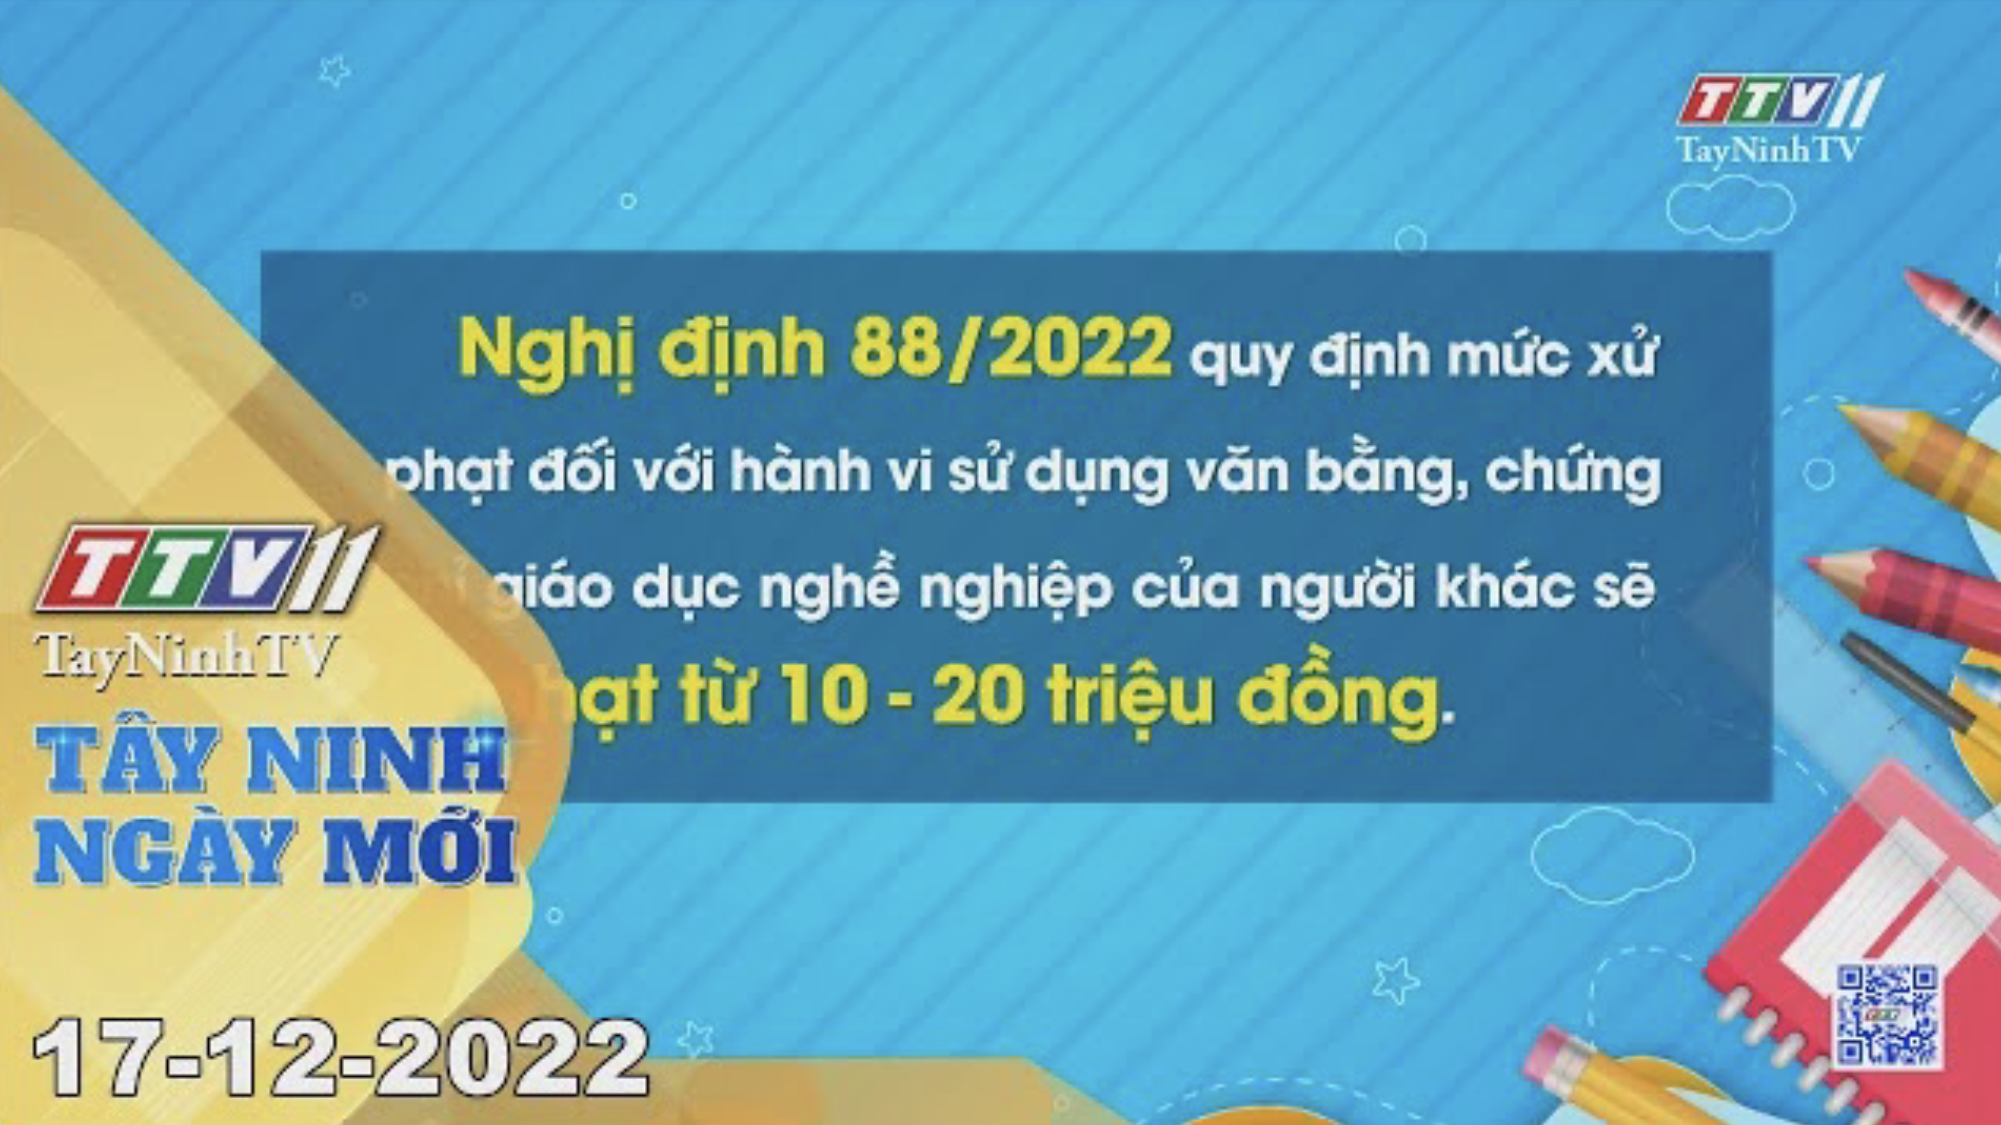 Tây Ninh ngày mới 17-12-2022 | Tin tức hôm nay | TayNinhTV